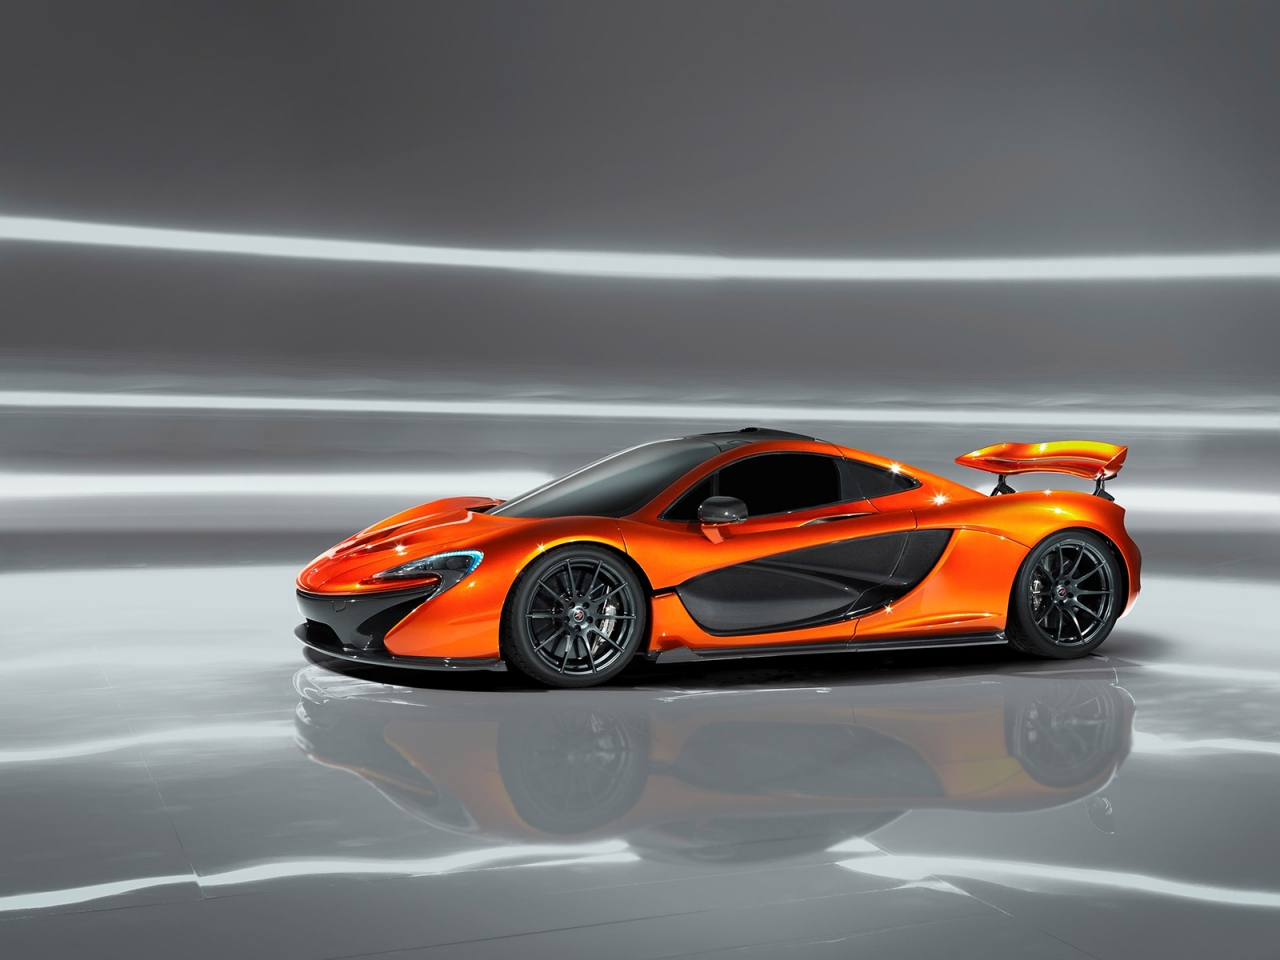 Orange McLaren P1 Concept for 1280 x 960 resolution